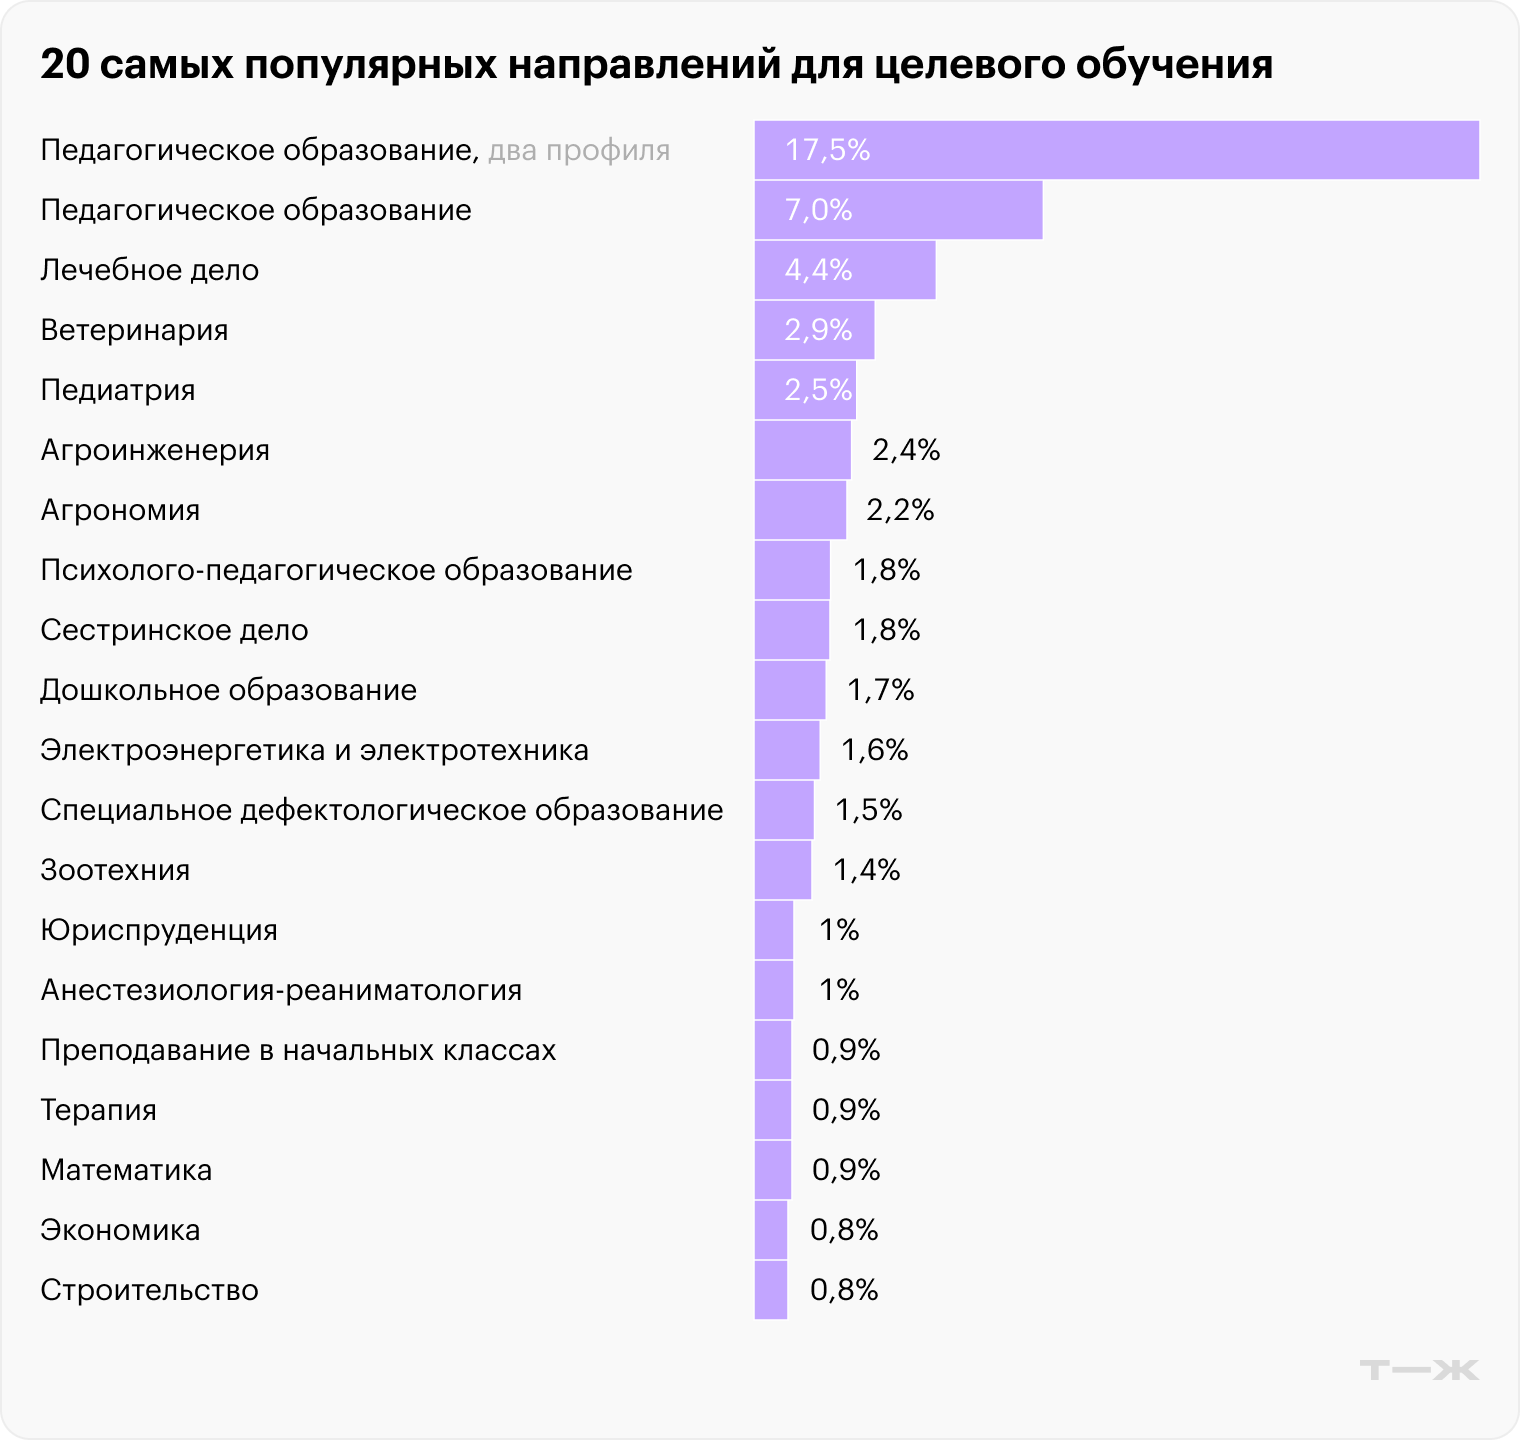 На топ-20 профессий приходится половина от всех предложений. Источник: trudvsem.ru, расчеты автора